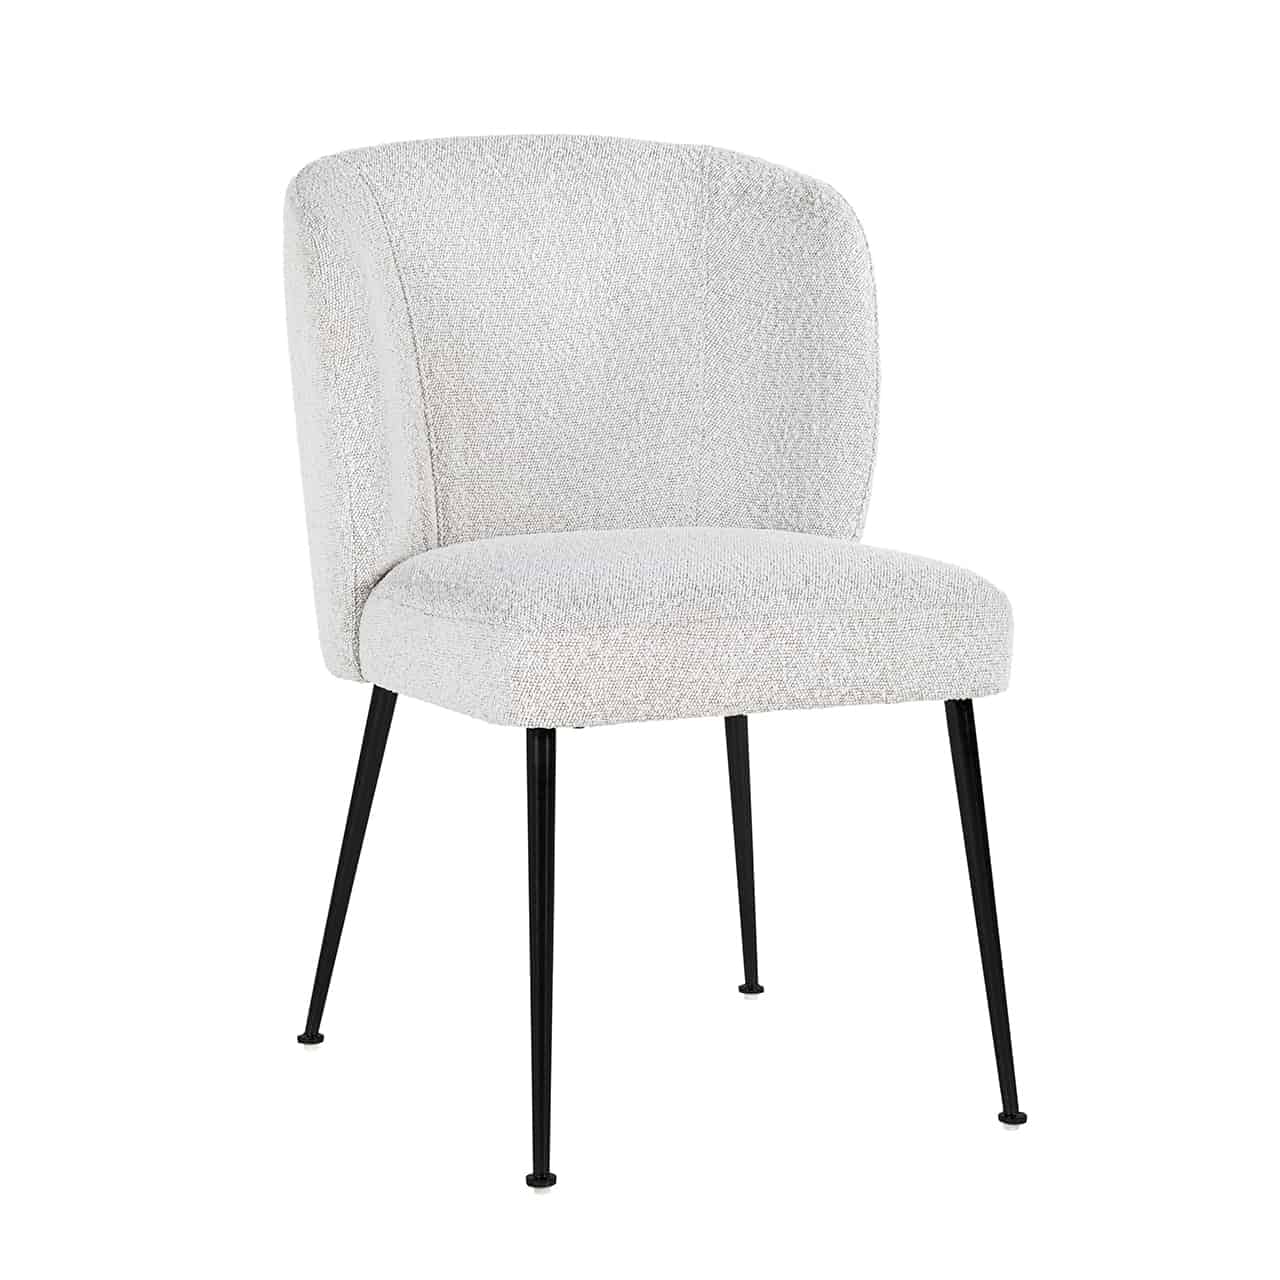 Vollpolsterstuhl bezogen mit weißem Bouclé; vier, dünne, schräg nach außen stehende schwarze Stuhlbeine, darauf eine dickgepolsterte Sitzfläche mit einer leicht gebogenen Lehne.